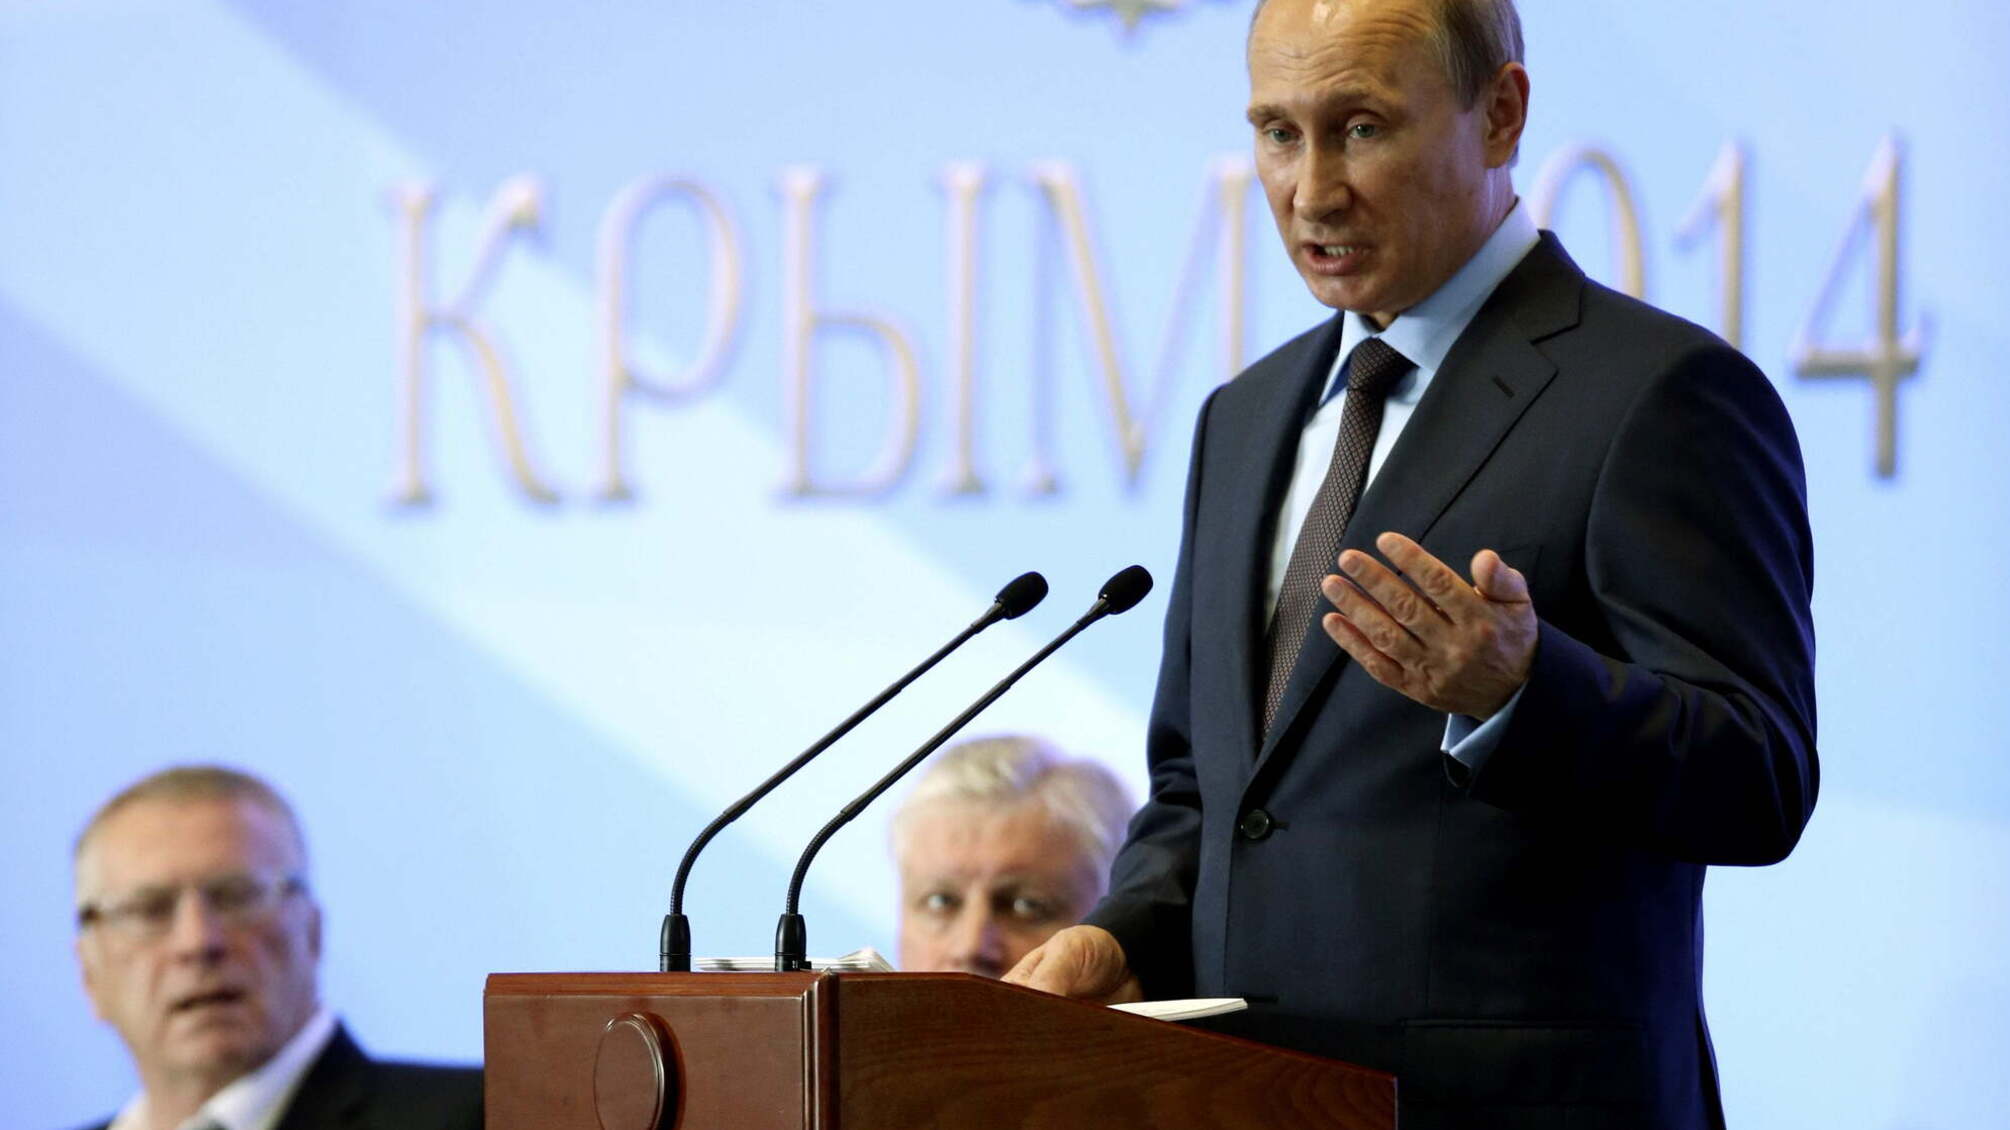 “Перемога здорового глузду”: в Кремлі заявили, що повернення країни-агресора в ПАРЄ є закономірним (цитата)